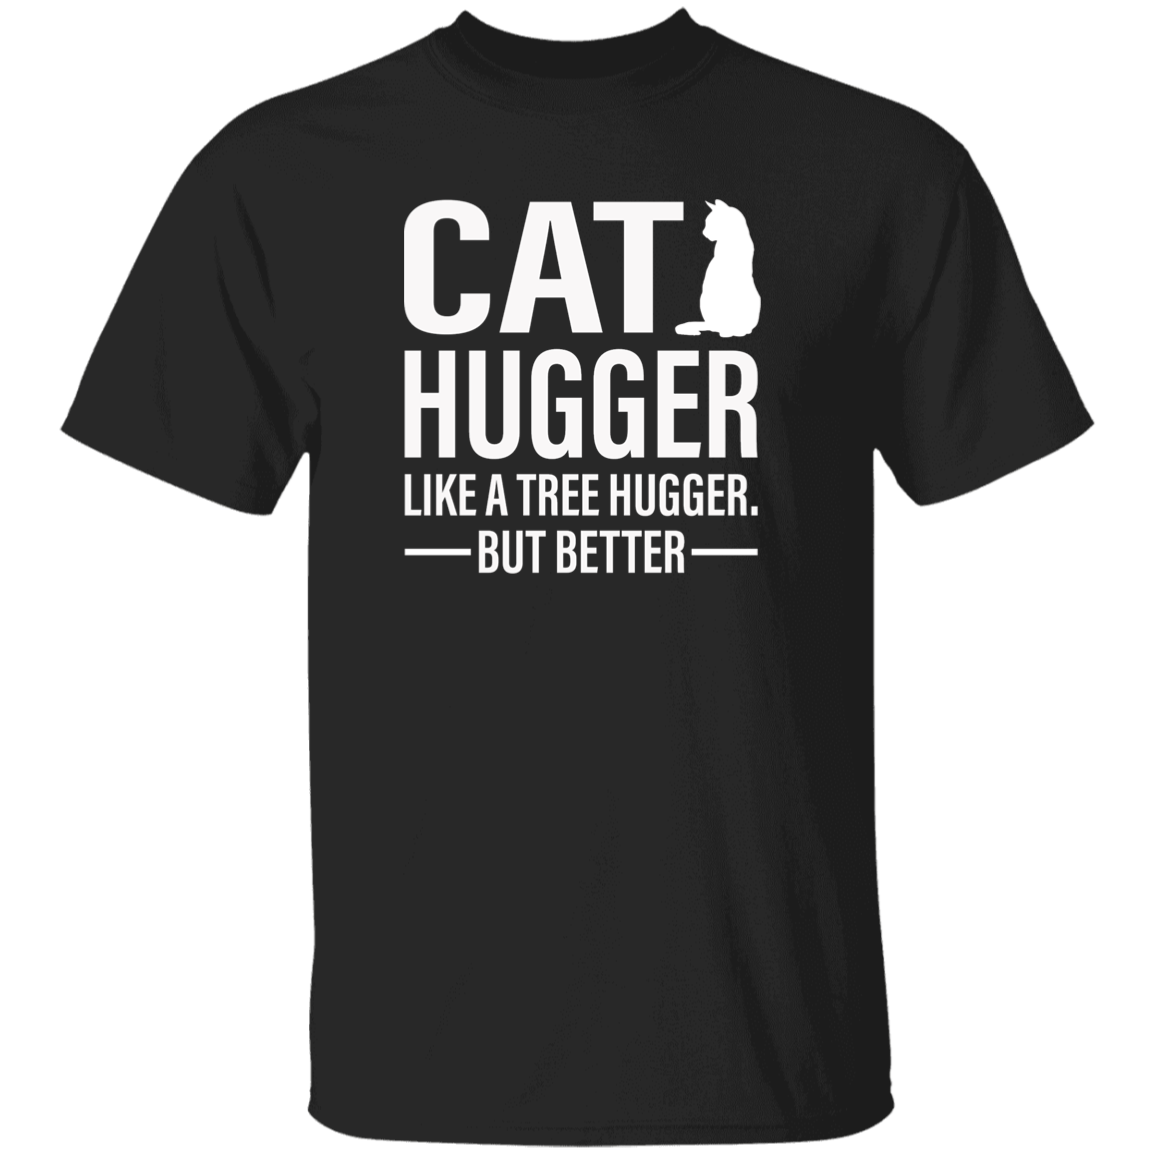 Cat Hugger - T Shirt.